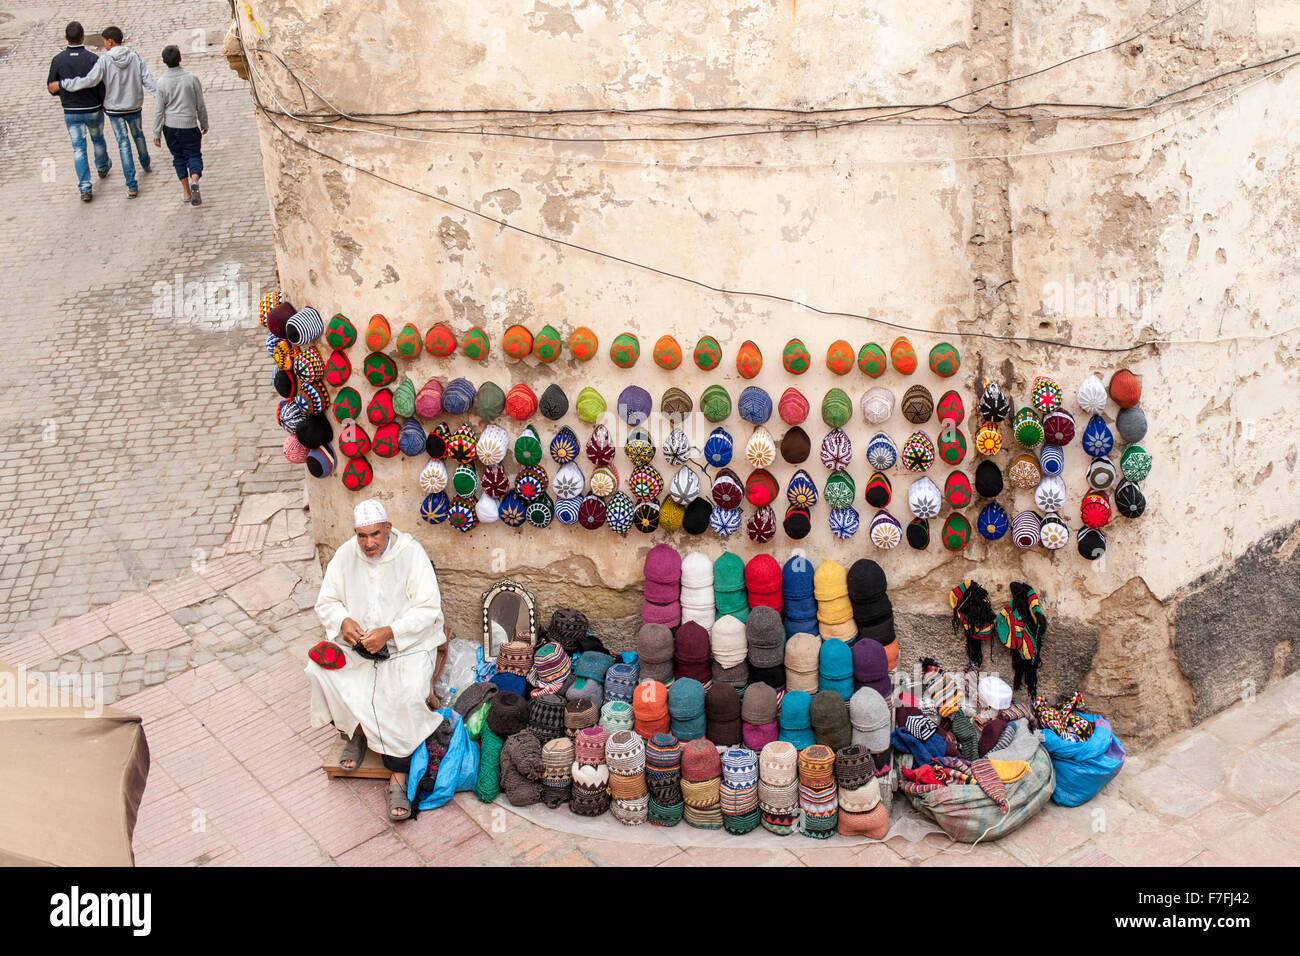 Kufi/fez hat vendeur dans la ville ancienne médina d'Essaouira, Maroc. Banque D'Images